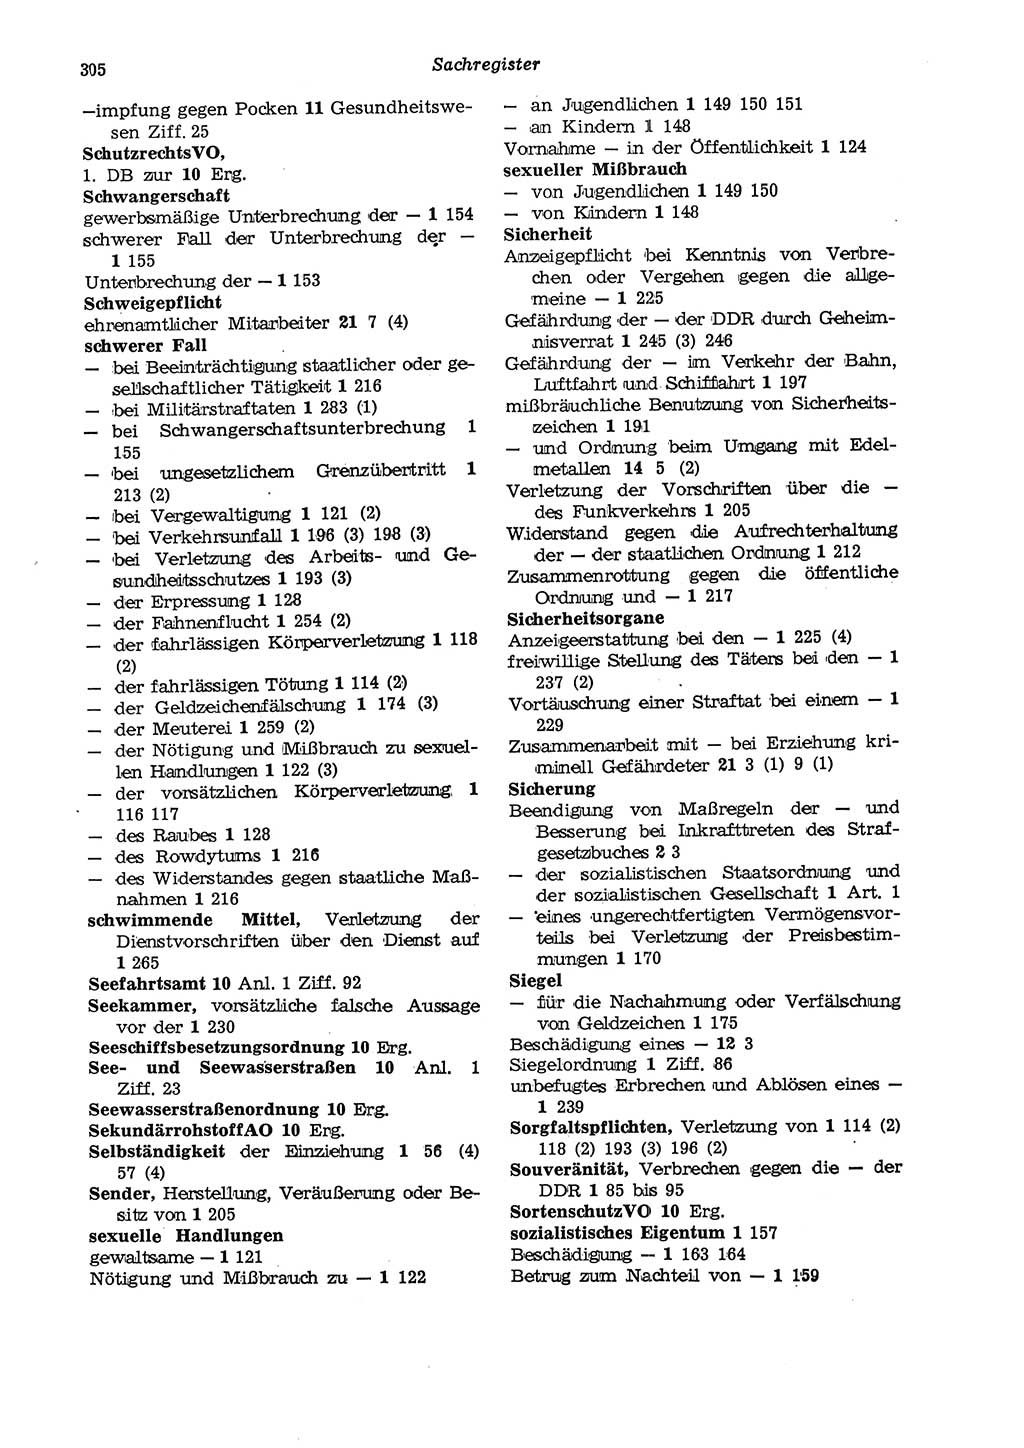 Strafgesetzbuch (StGB) der Deutschen Demokratischen Republik (DDR) und angrenzende Gesetze und Bestimmungen 1975, Seite 305 (StGB DDR Ges. Best. 1975, S. 305)